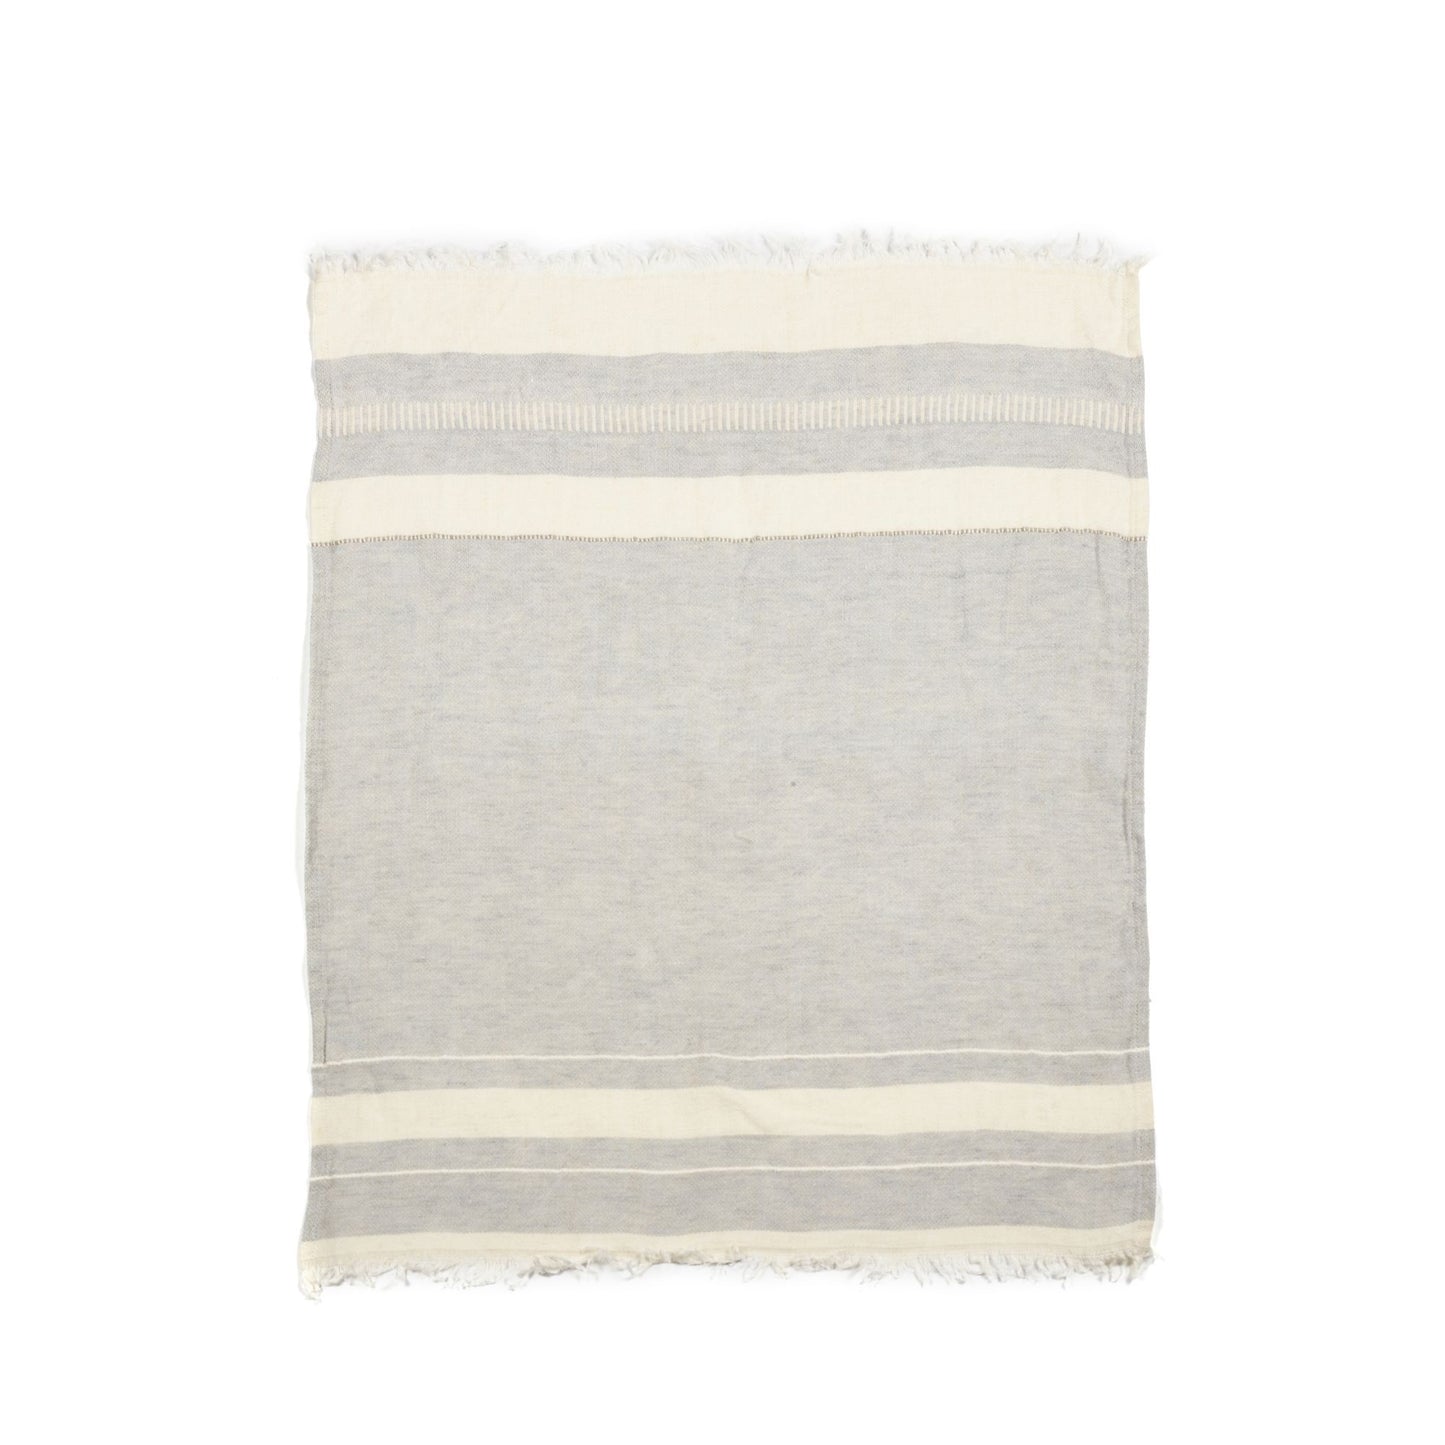 The Belgian Guest Towel in Gent Stripe - 21.5"x25.5"